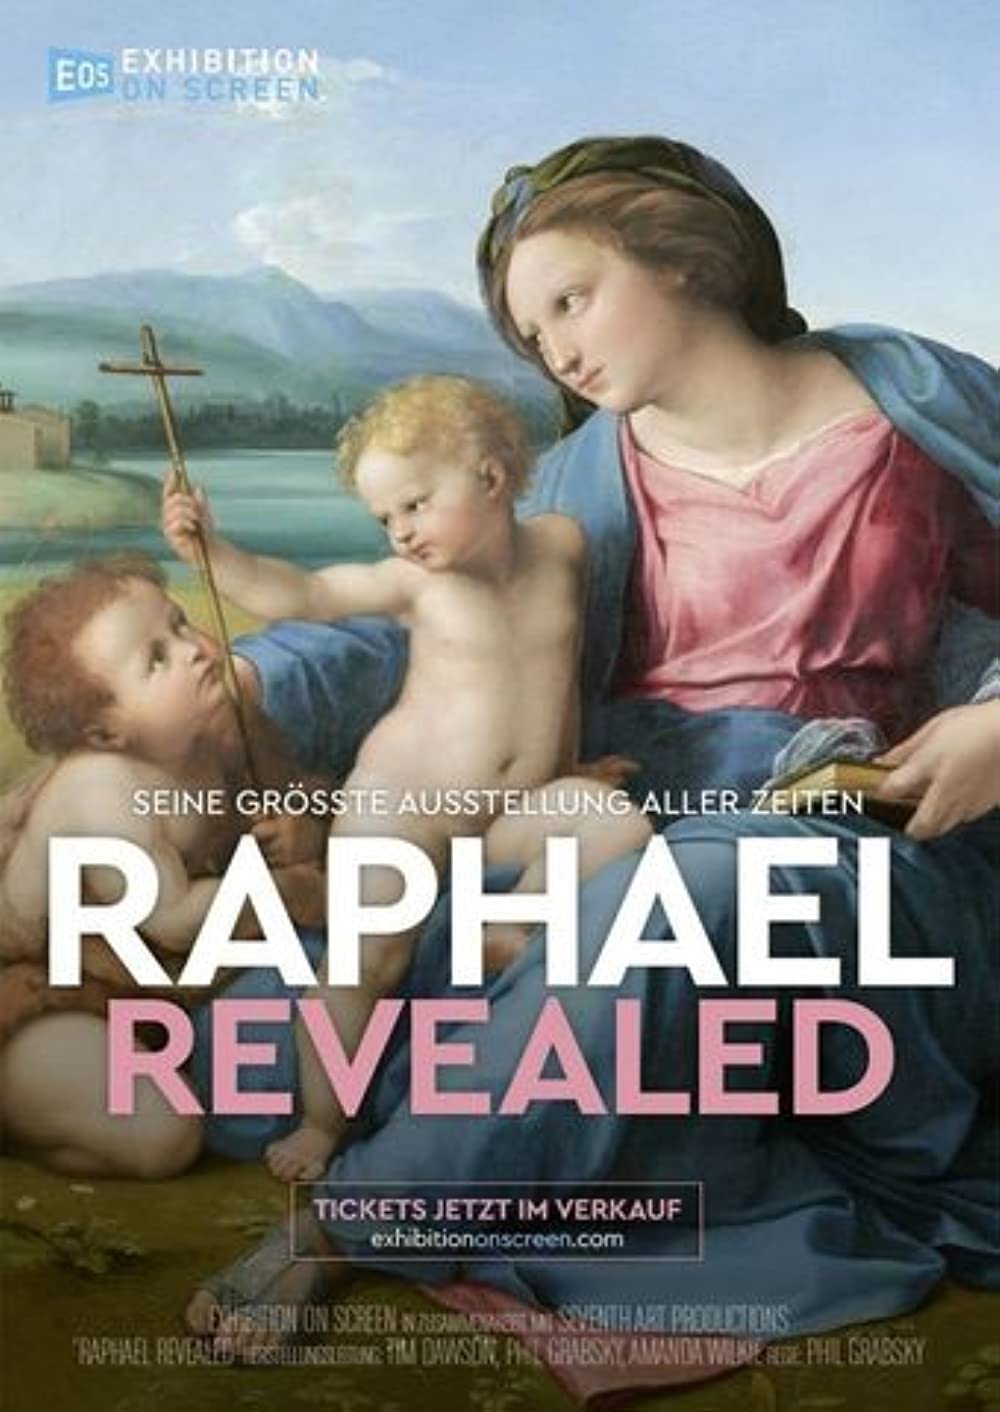 Filmbeschreibung zu Exhibition on Screen: Raphael Revealed